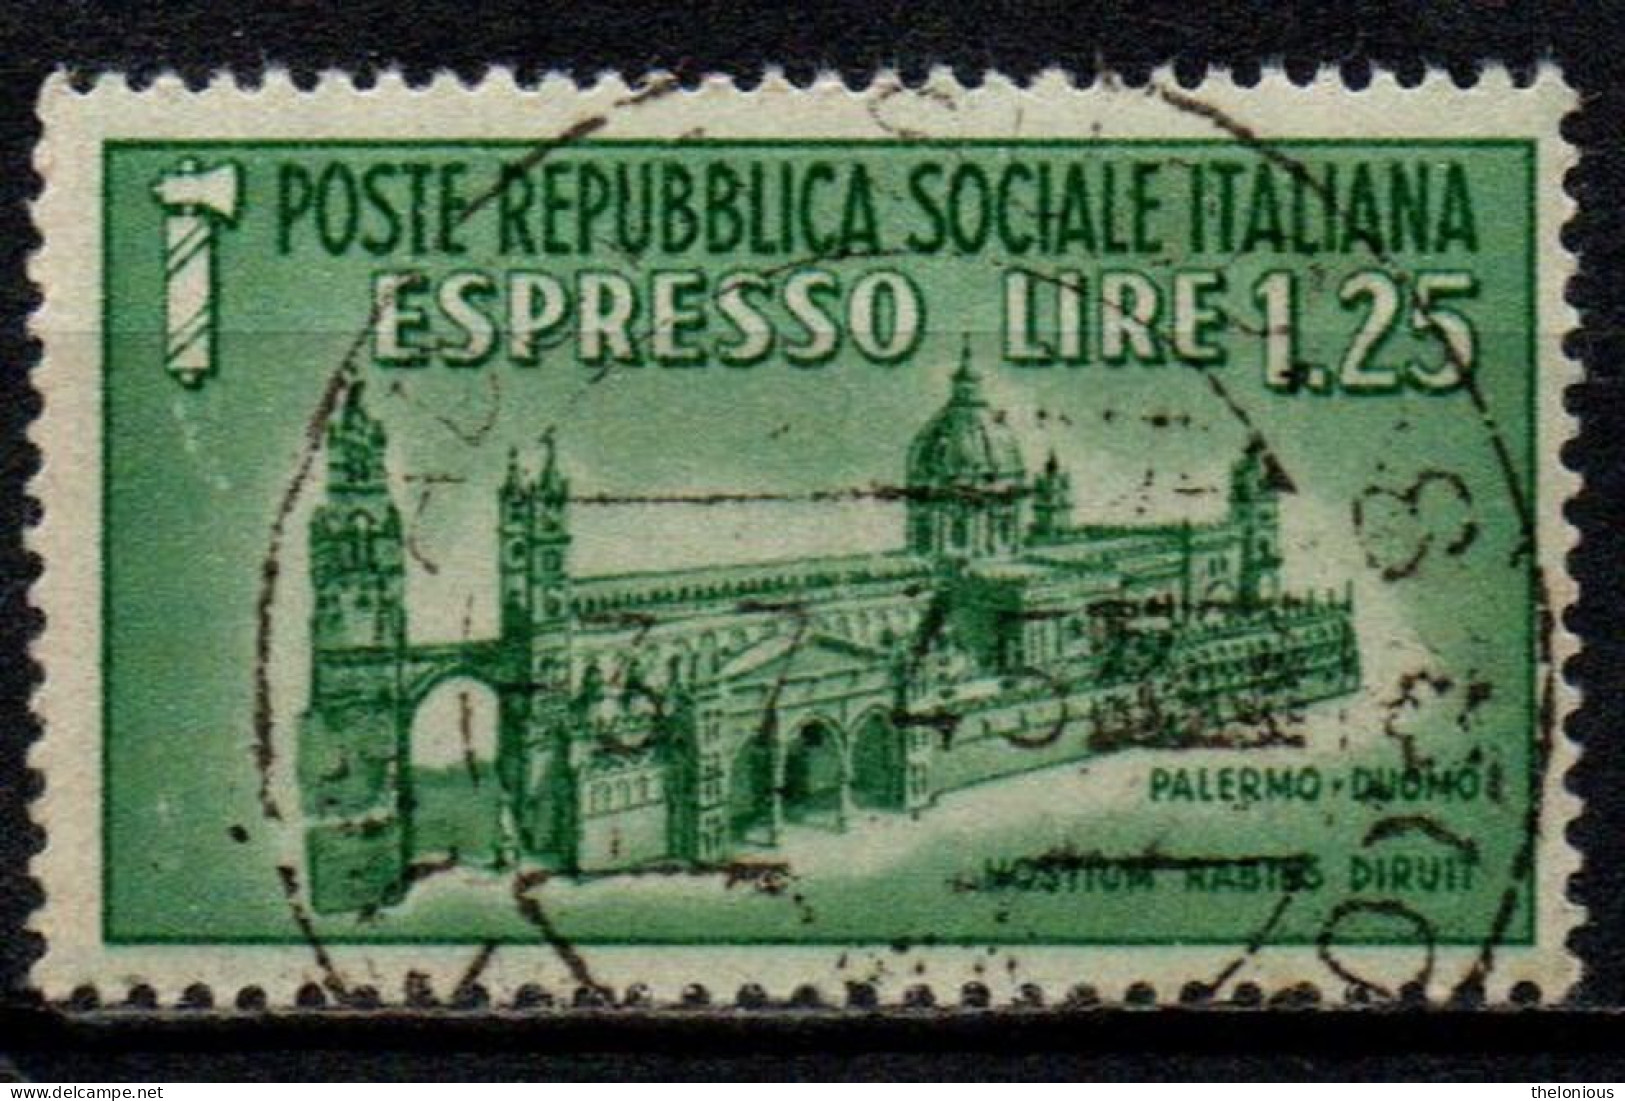 1944 Repubblica Sociale: Monumenti Distrutti - Espresso Lire 1,25 Usato - Correo Urgente